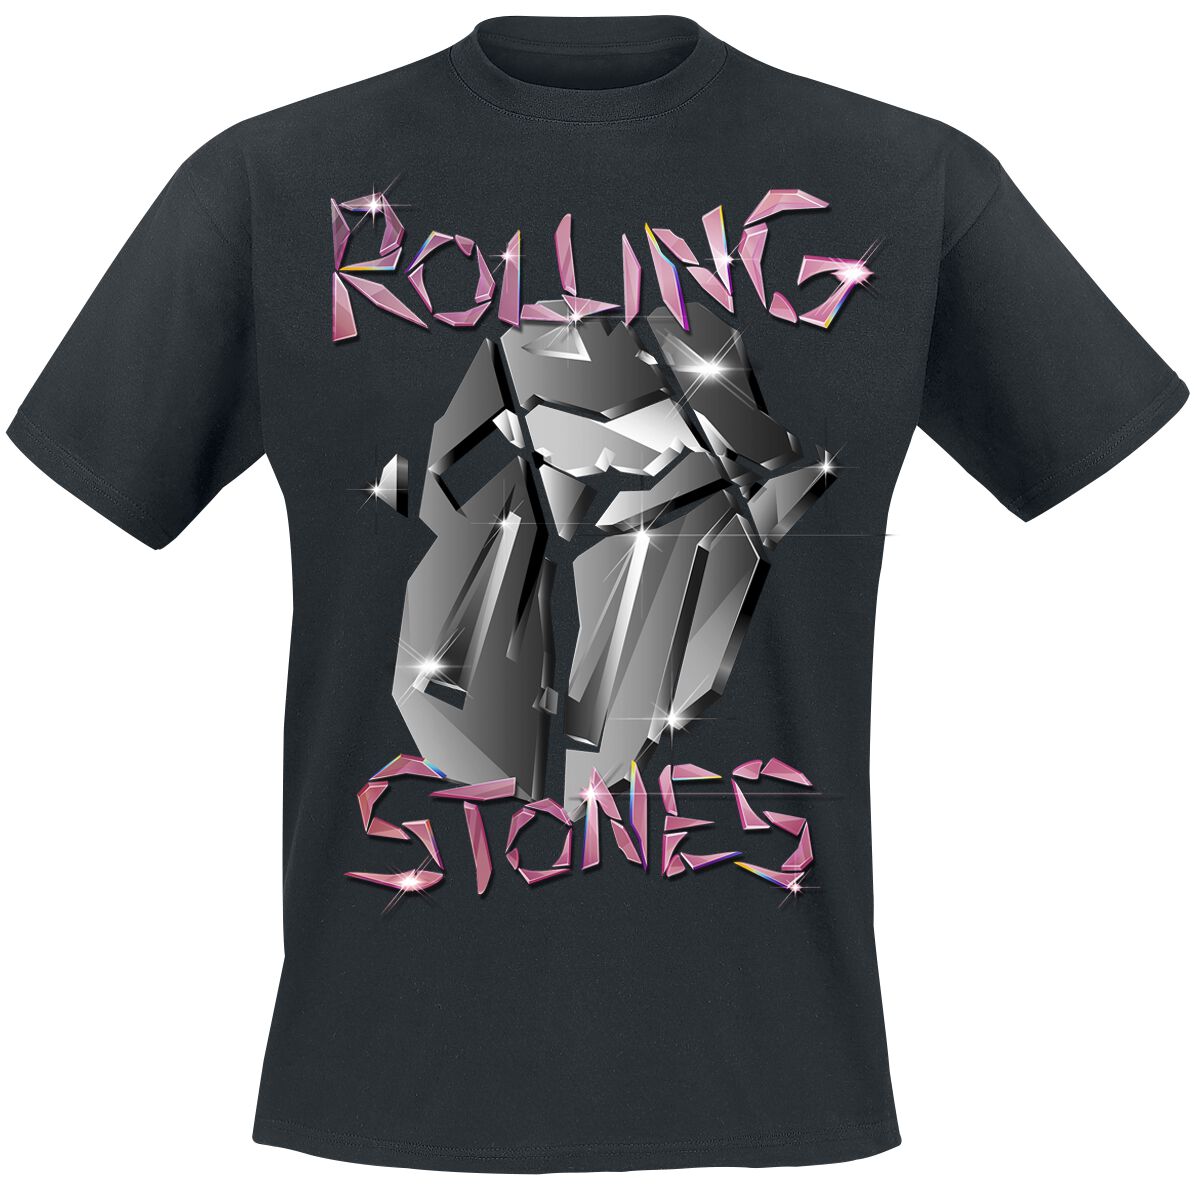 The Rolling Stones T-Shirt - Pop Up Tour Germany - Exclusive T-Shirt - S bis 3XL - für Männer - Größe S - schwarz  - EMP exklusives Merchandise!